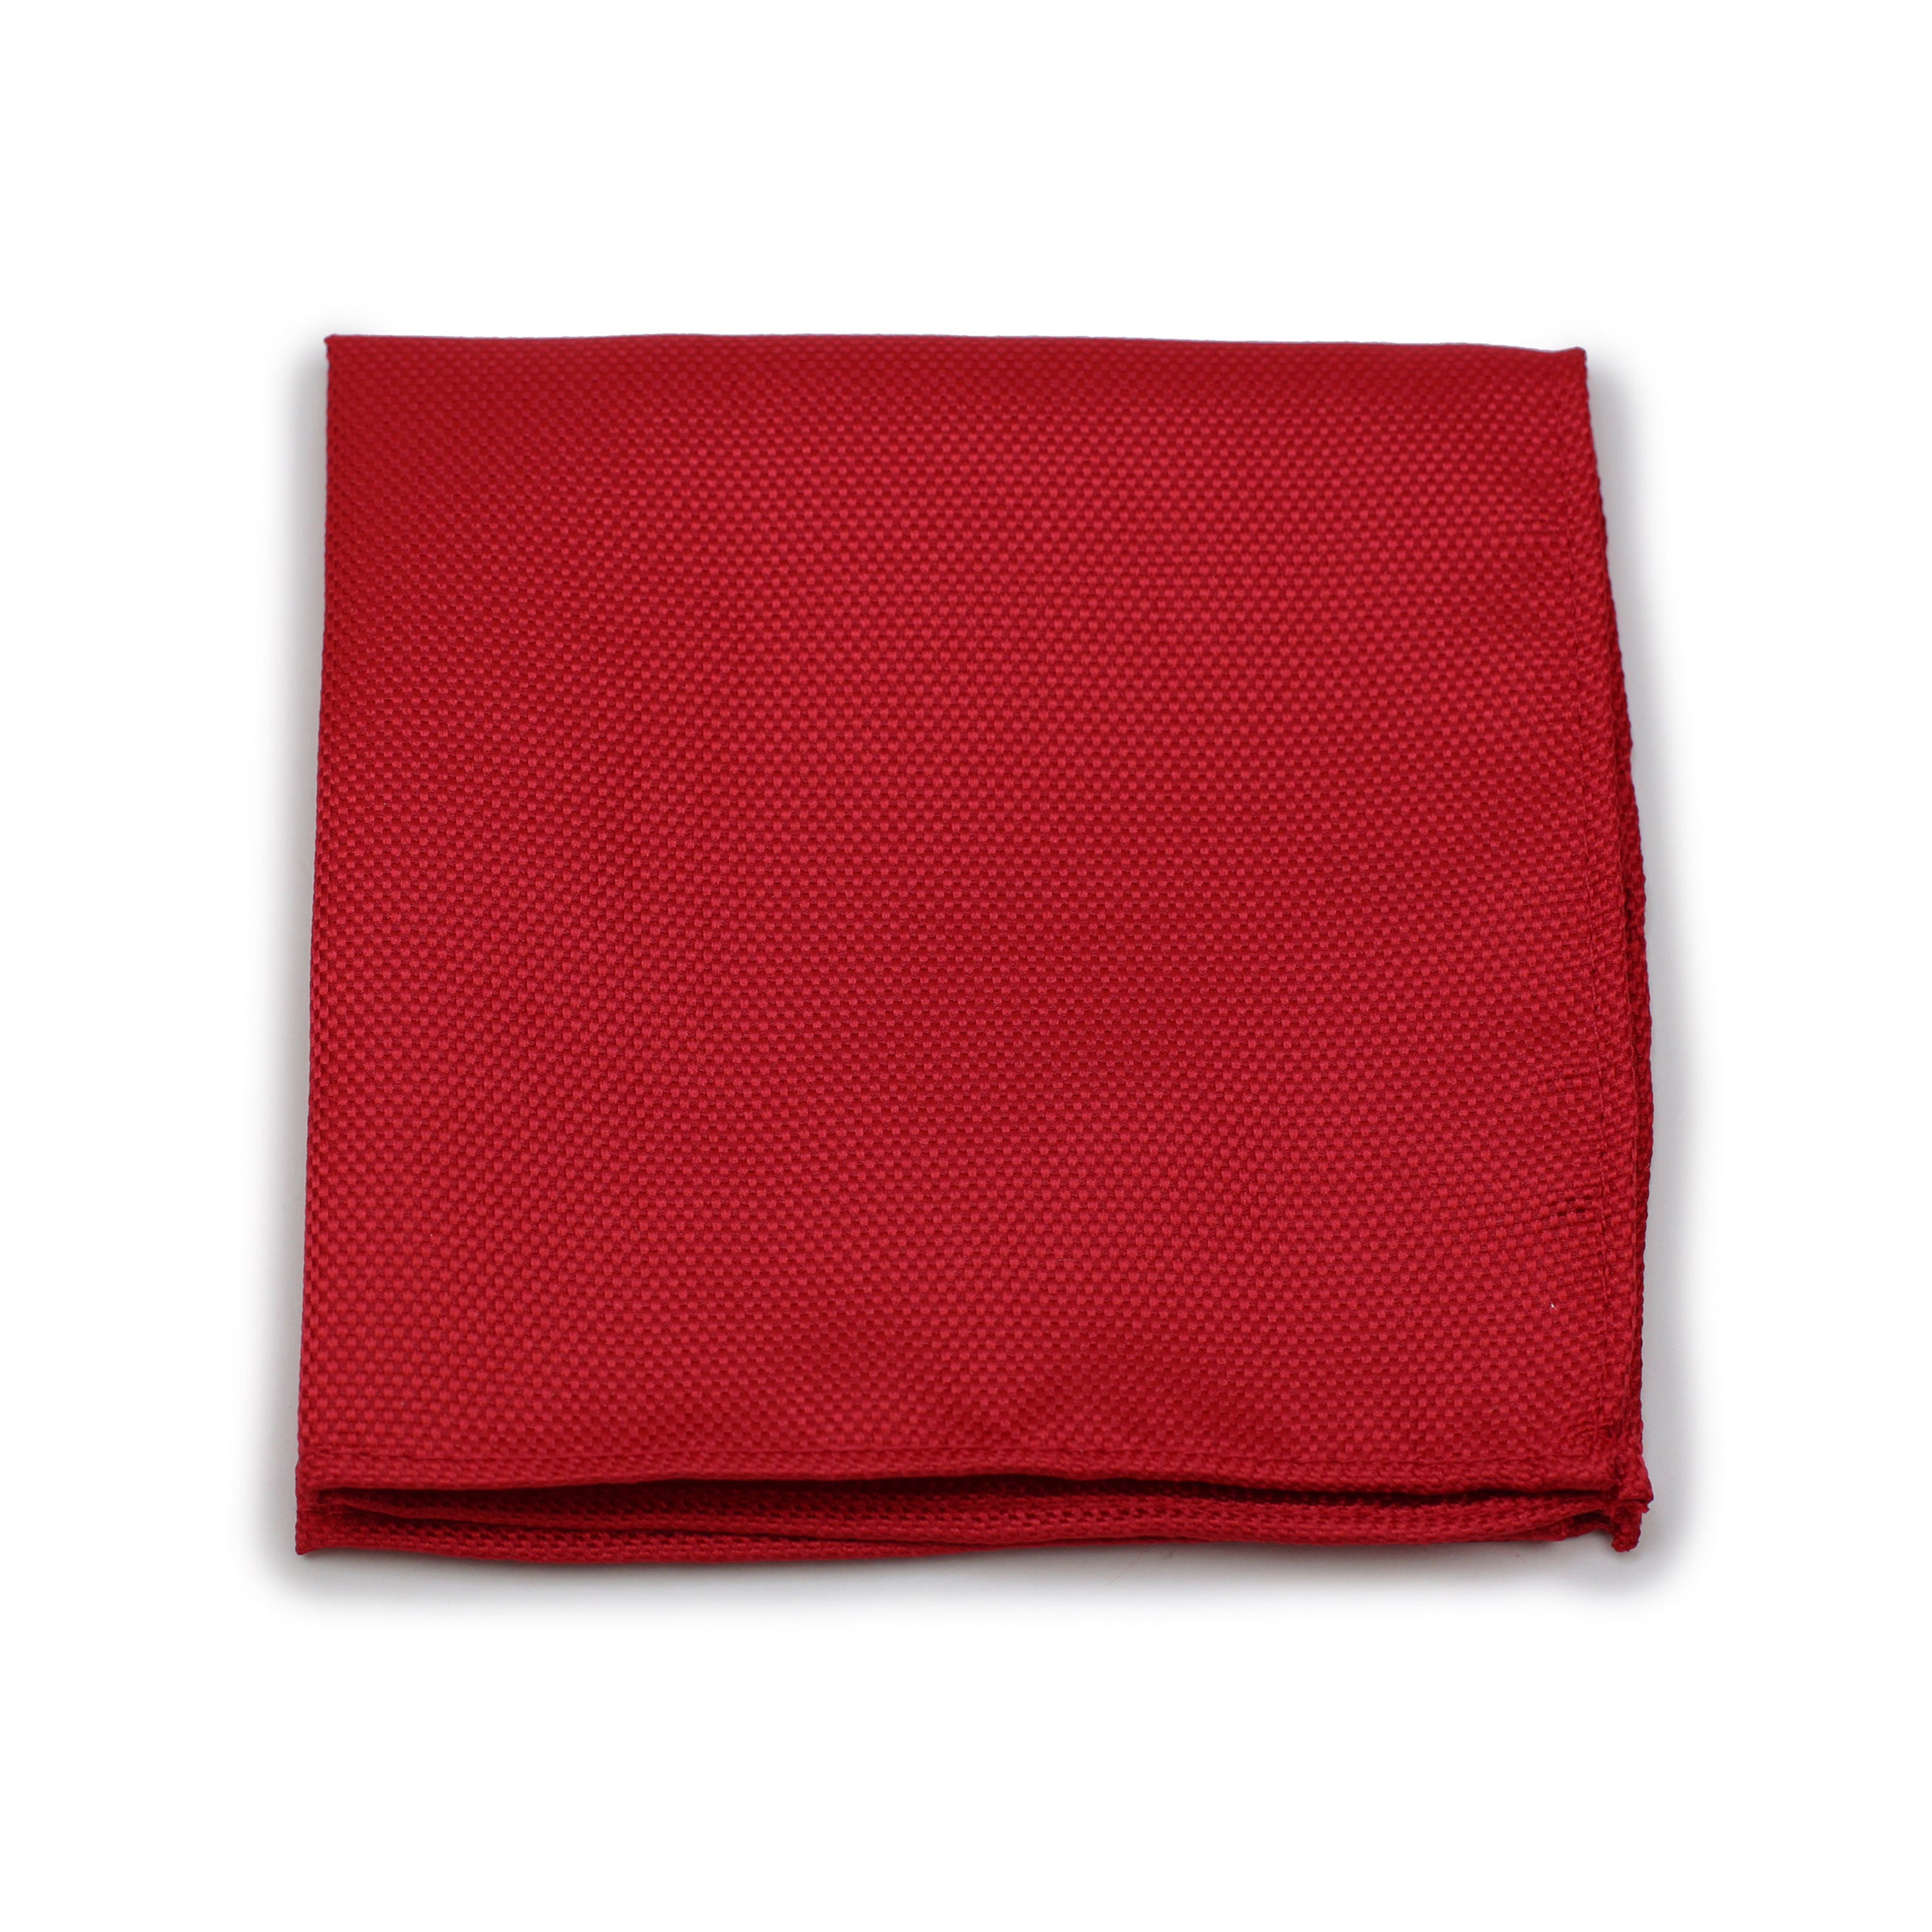 Dark Red Silk Ties - Solid Cherry-Red Necktie 